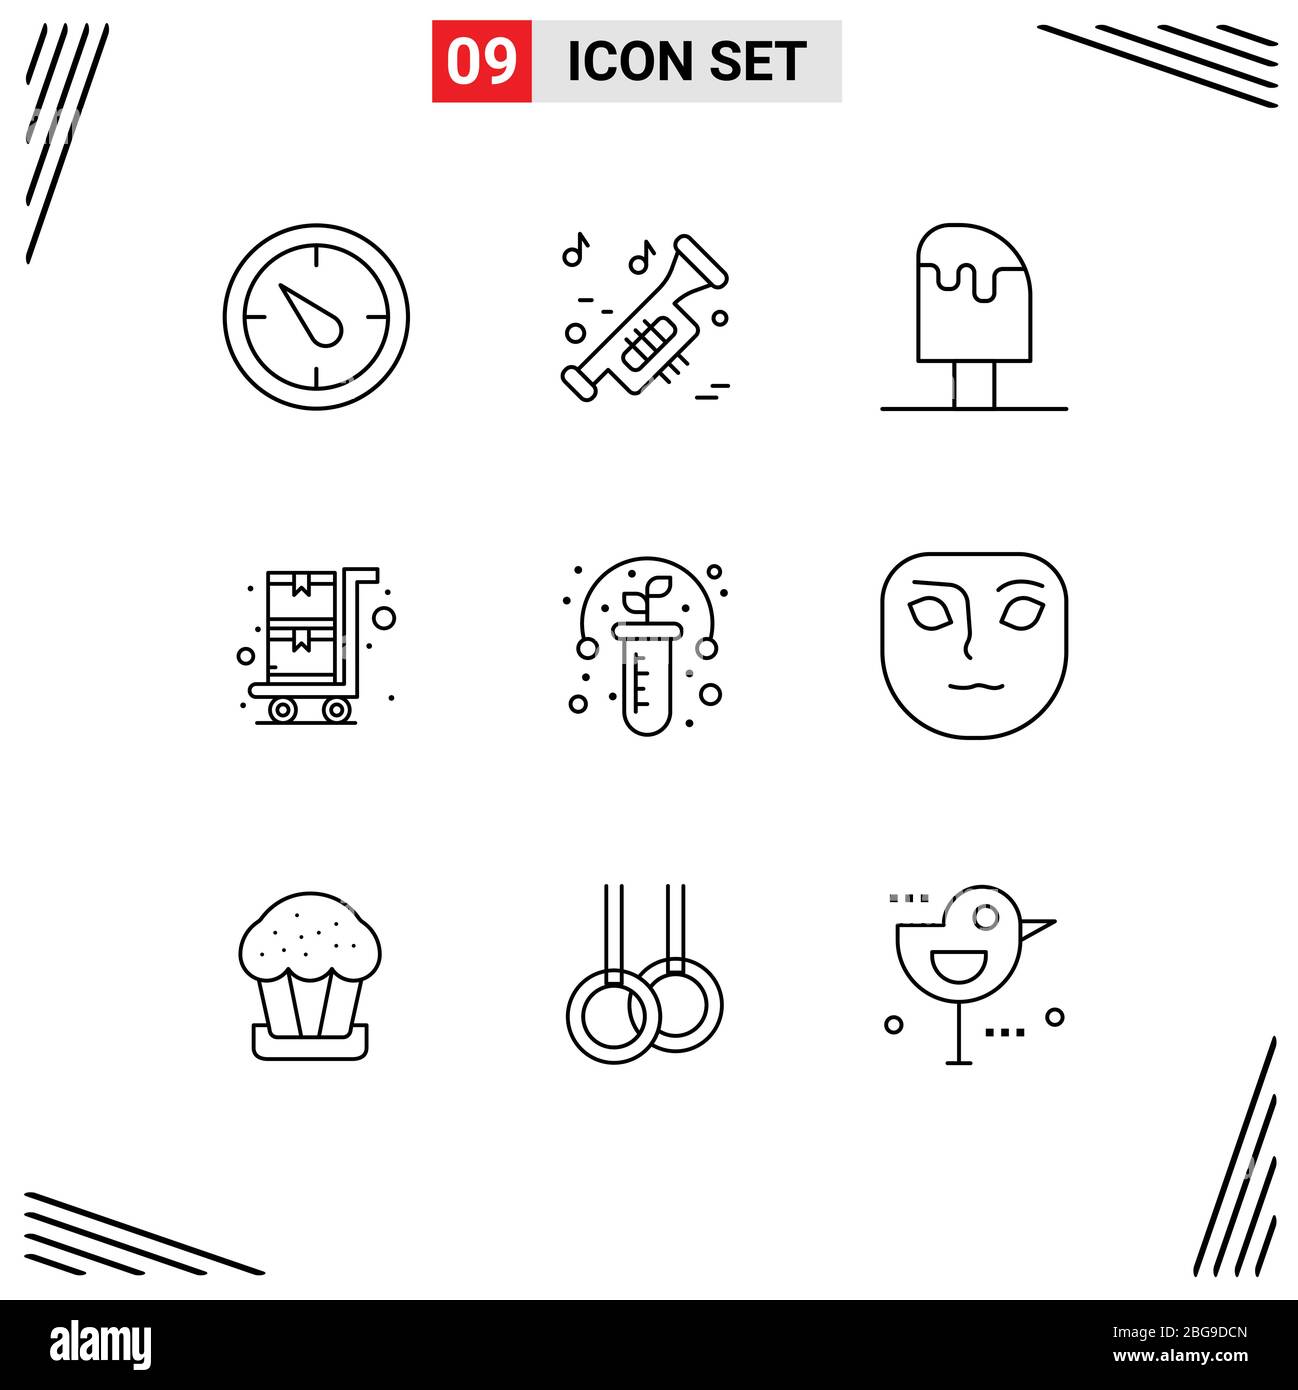 Confezione da 9 simboli e cartelli per Web Print Media, come test, ogm, cool, carrello, shopping, elementi di design vettoriali editabili Illustrazione Vettoriale